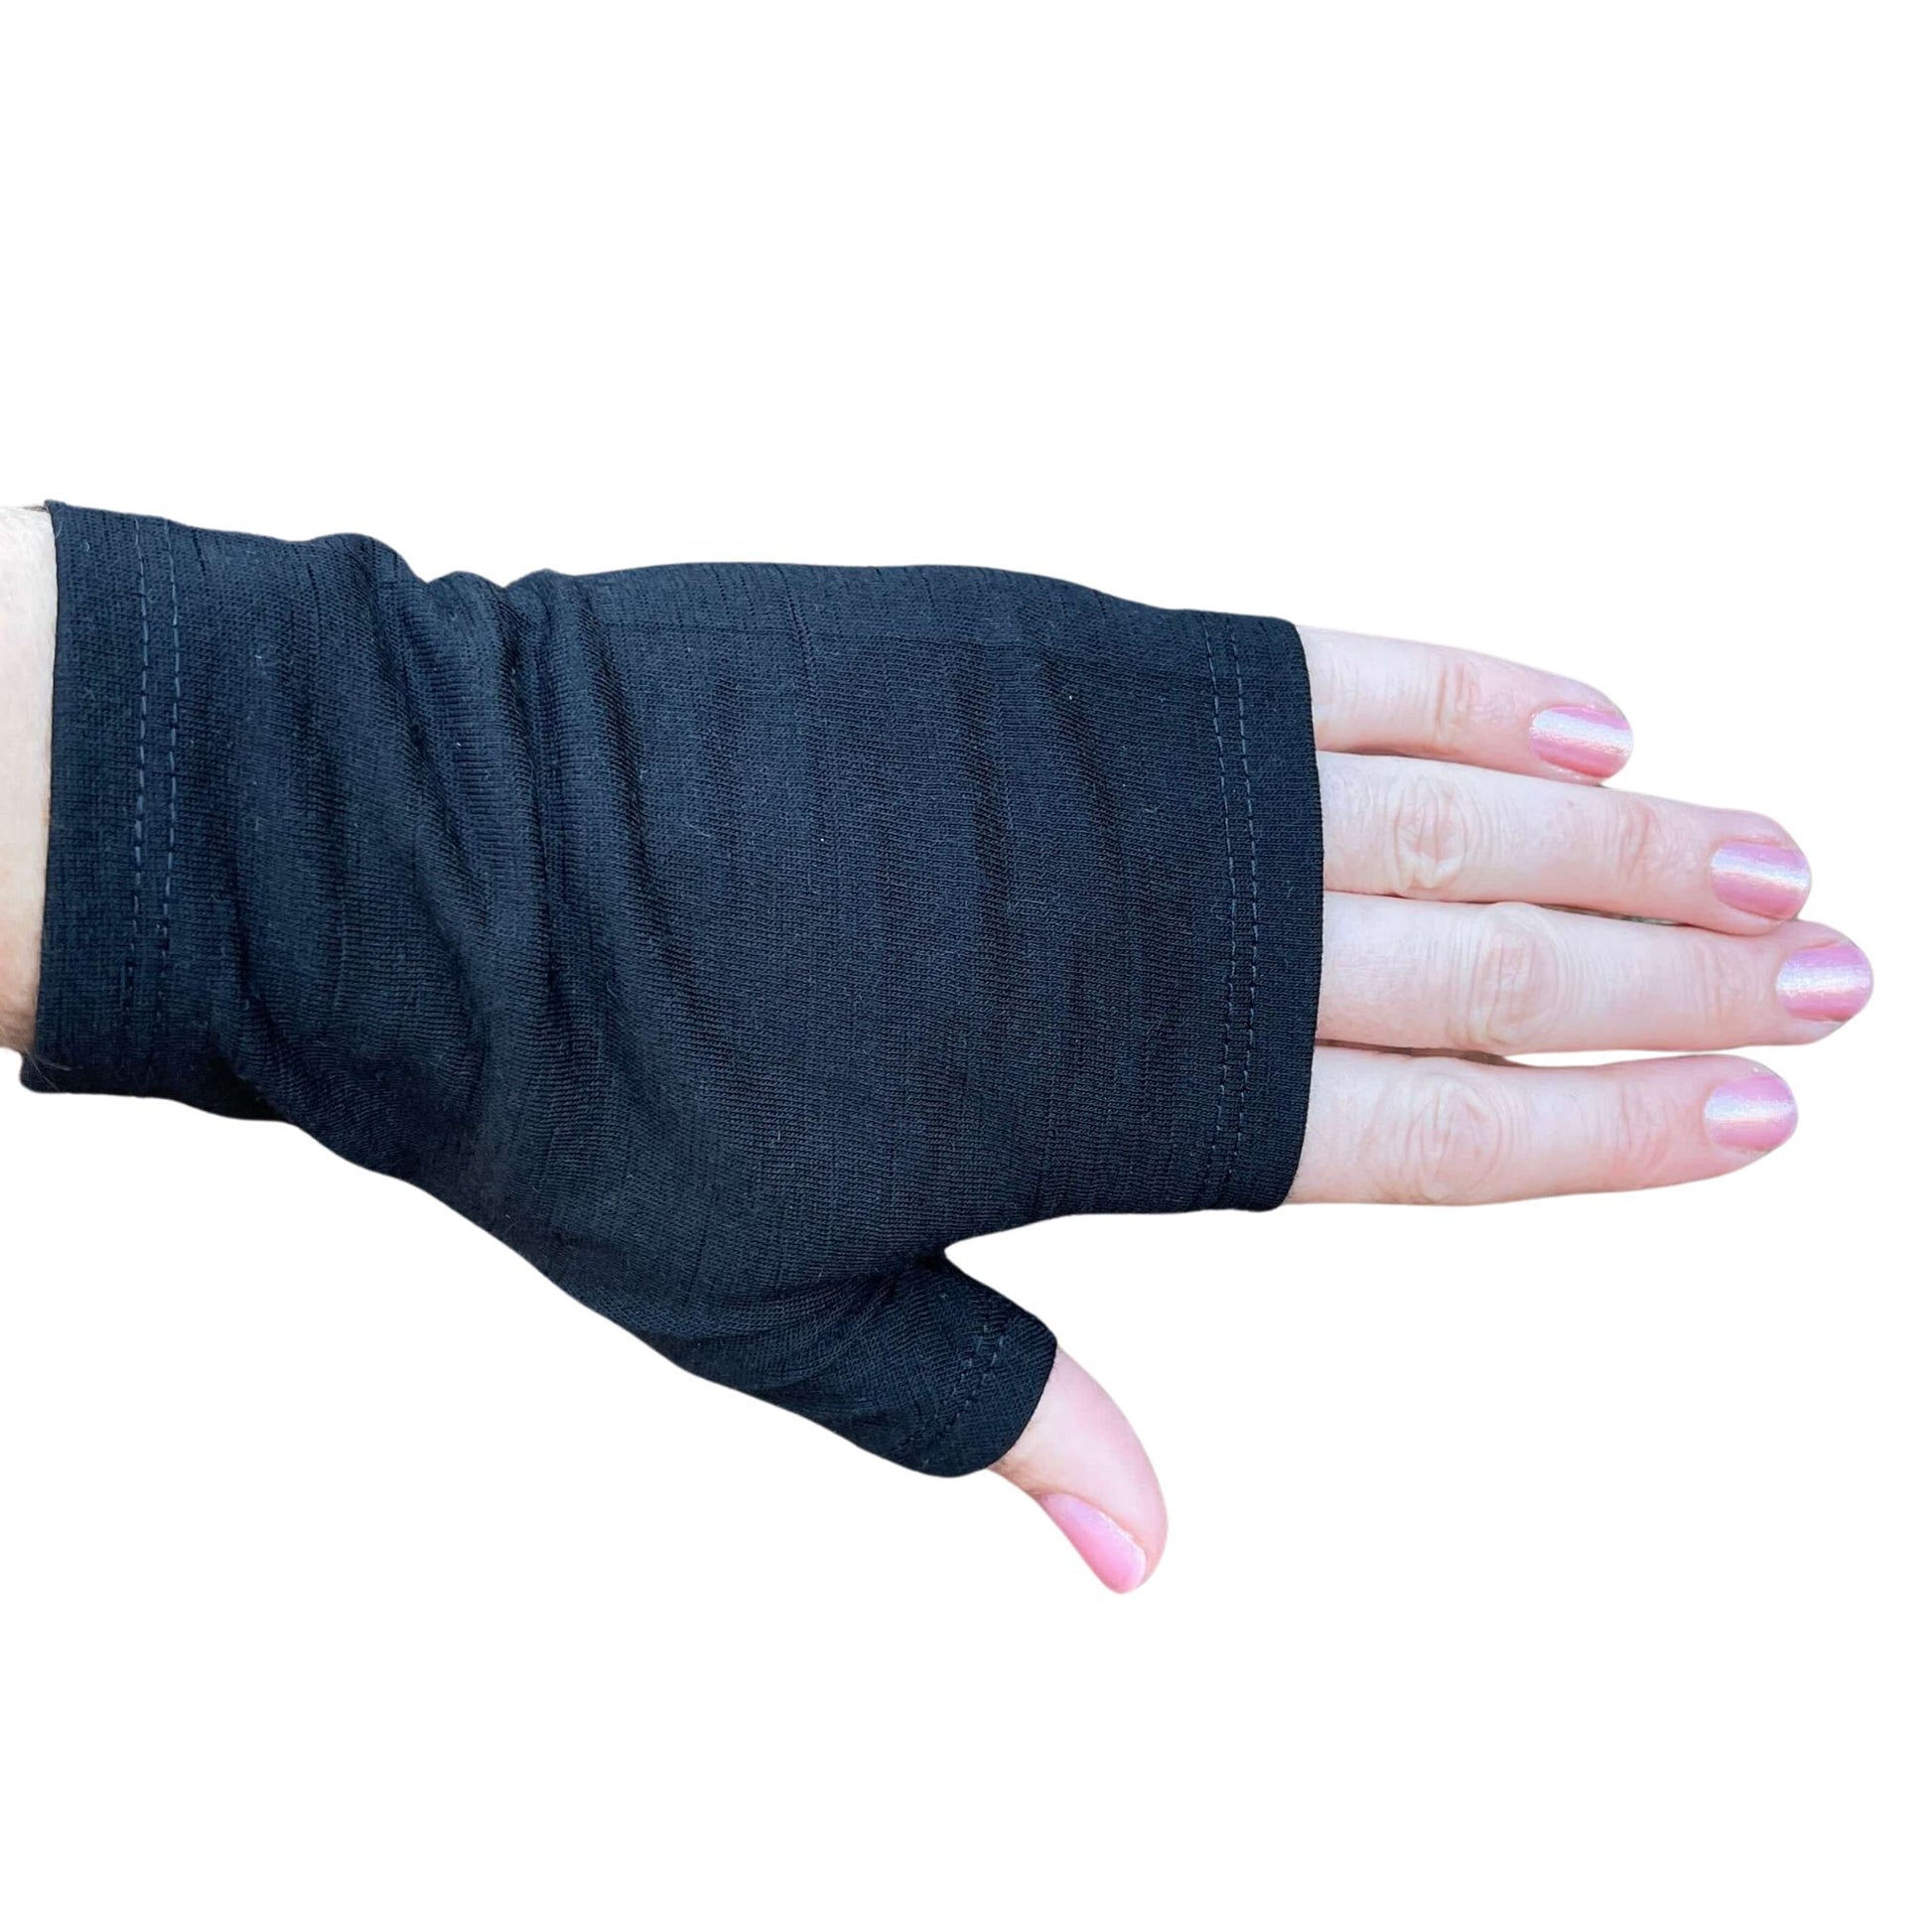 Fingerless merino gloves in plain black.